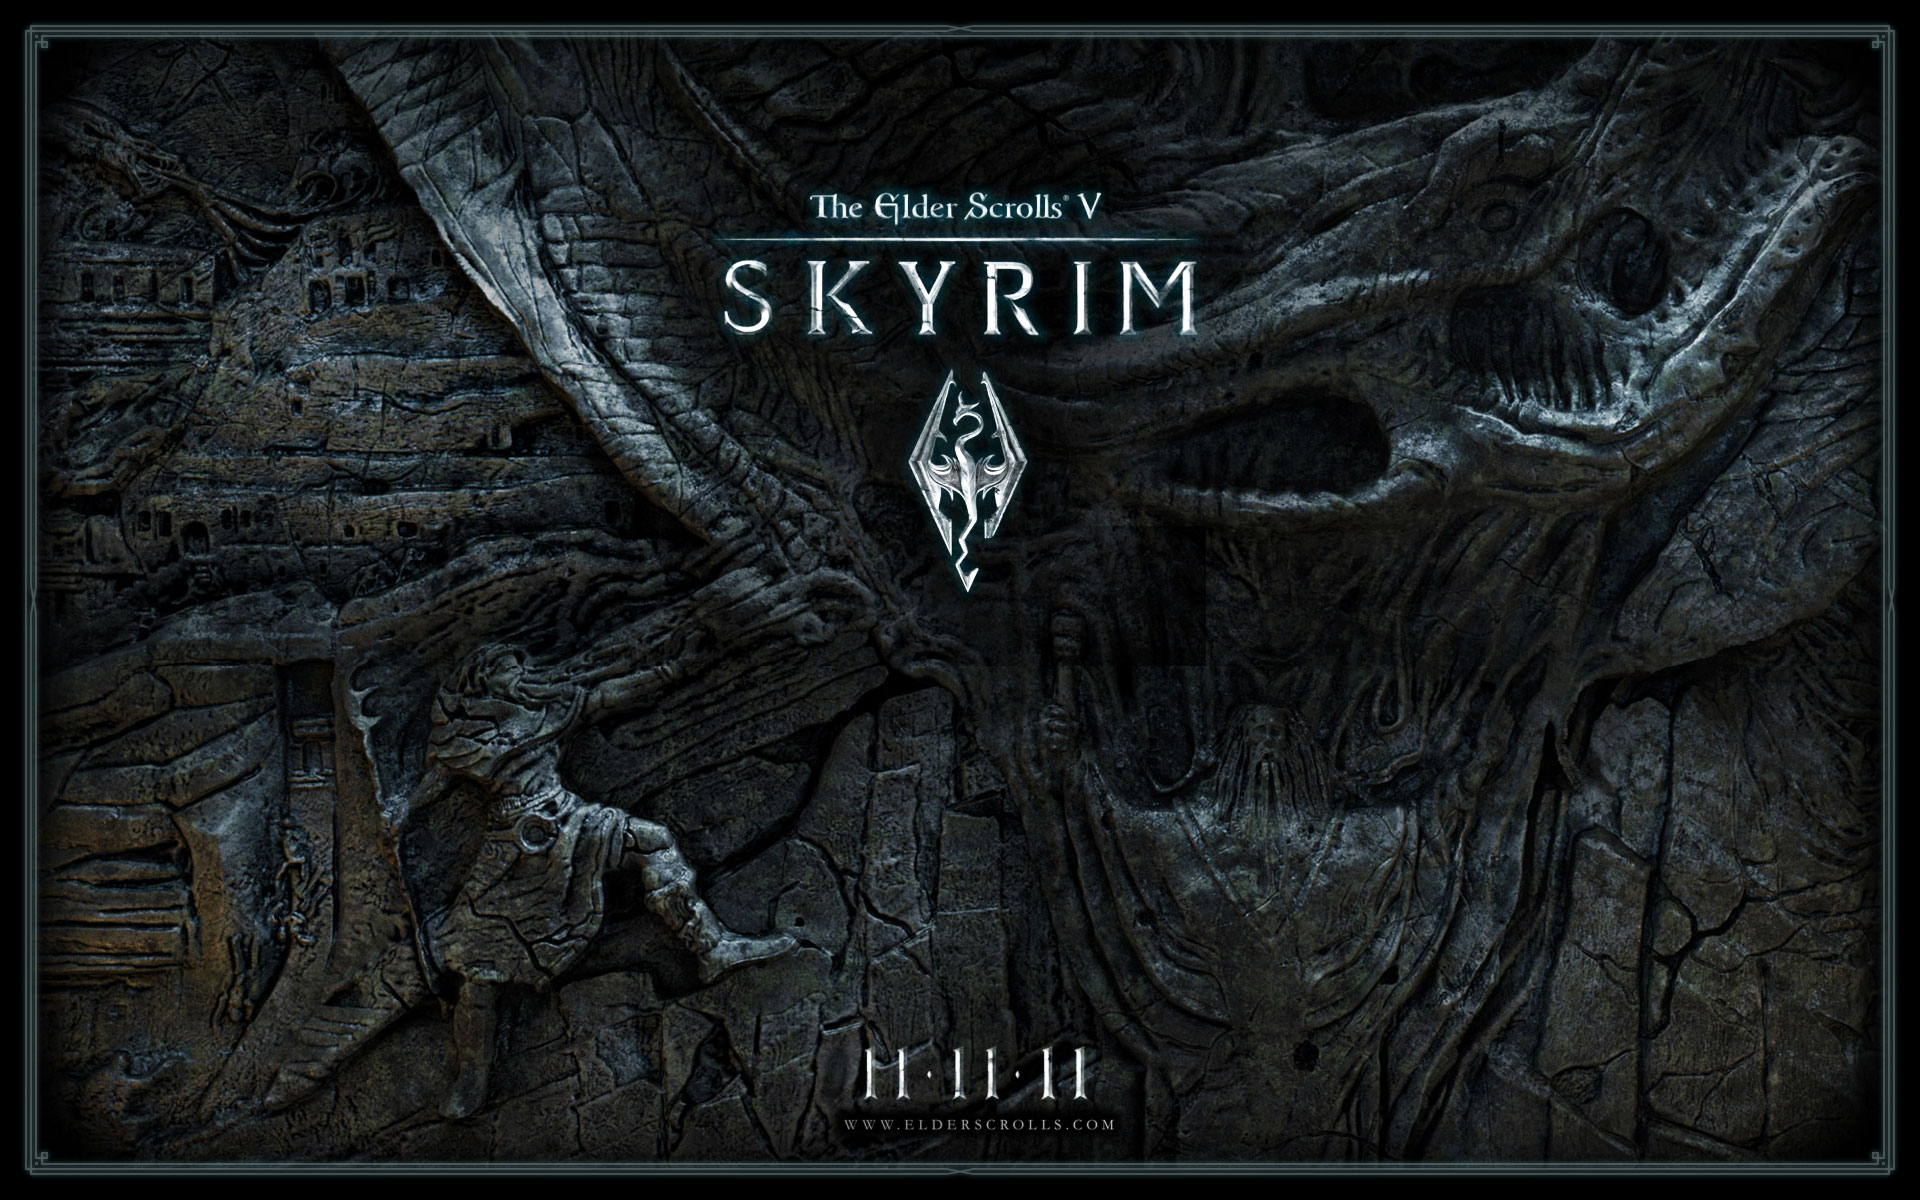 Edição coleccionador de The Elder Scrolls V: Skyrim